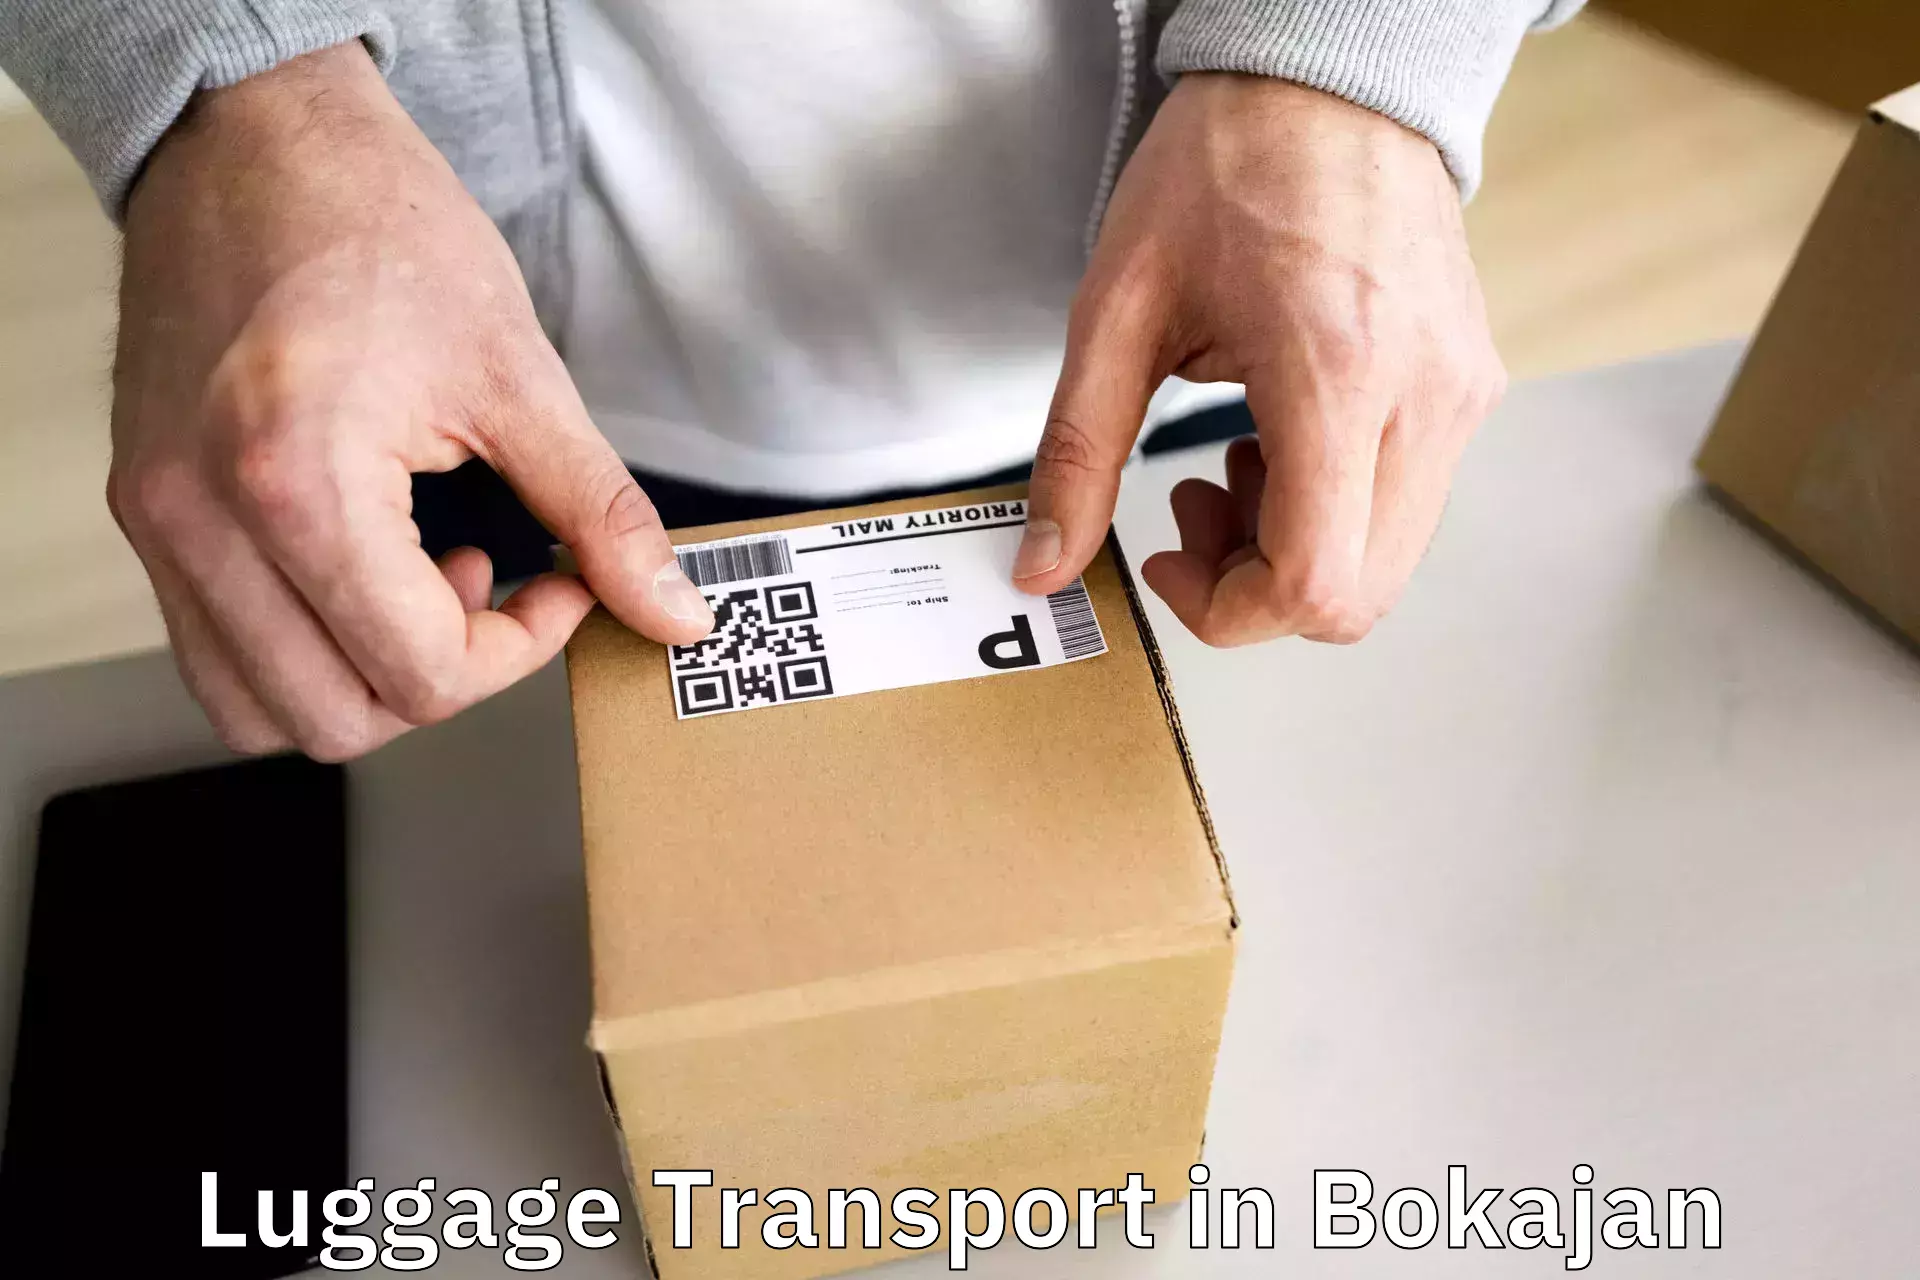 Premium luggage delivery in Bokajan